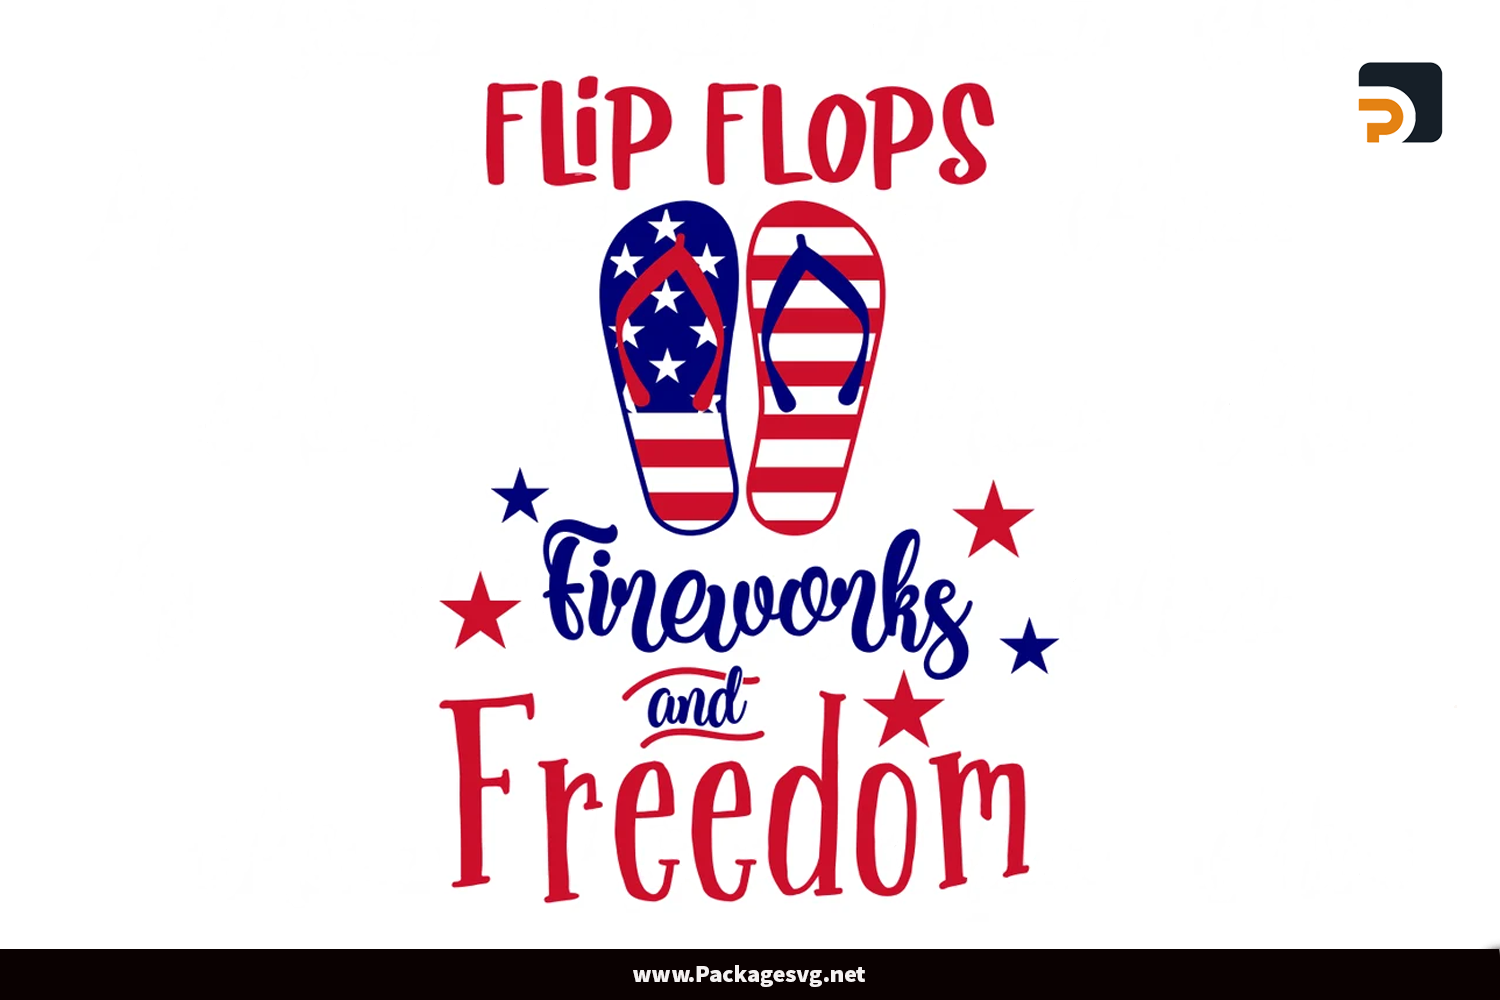 Flip Flops Fireworks and Freedom SVG, 4th of July SVG PNG DXF EPS JPG Digital Download